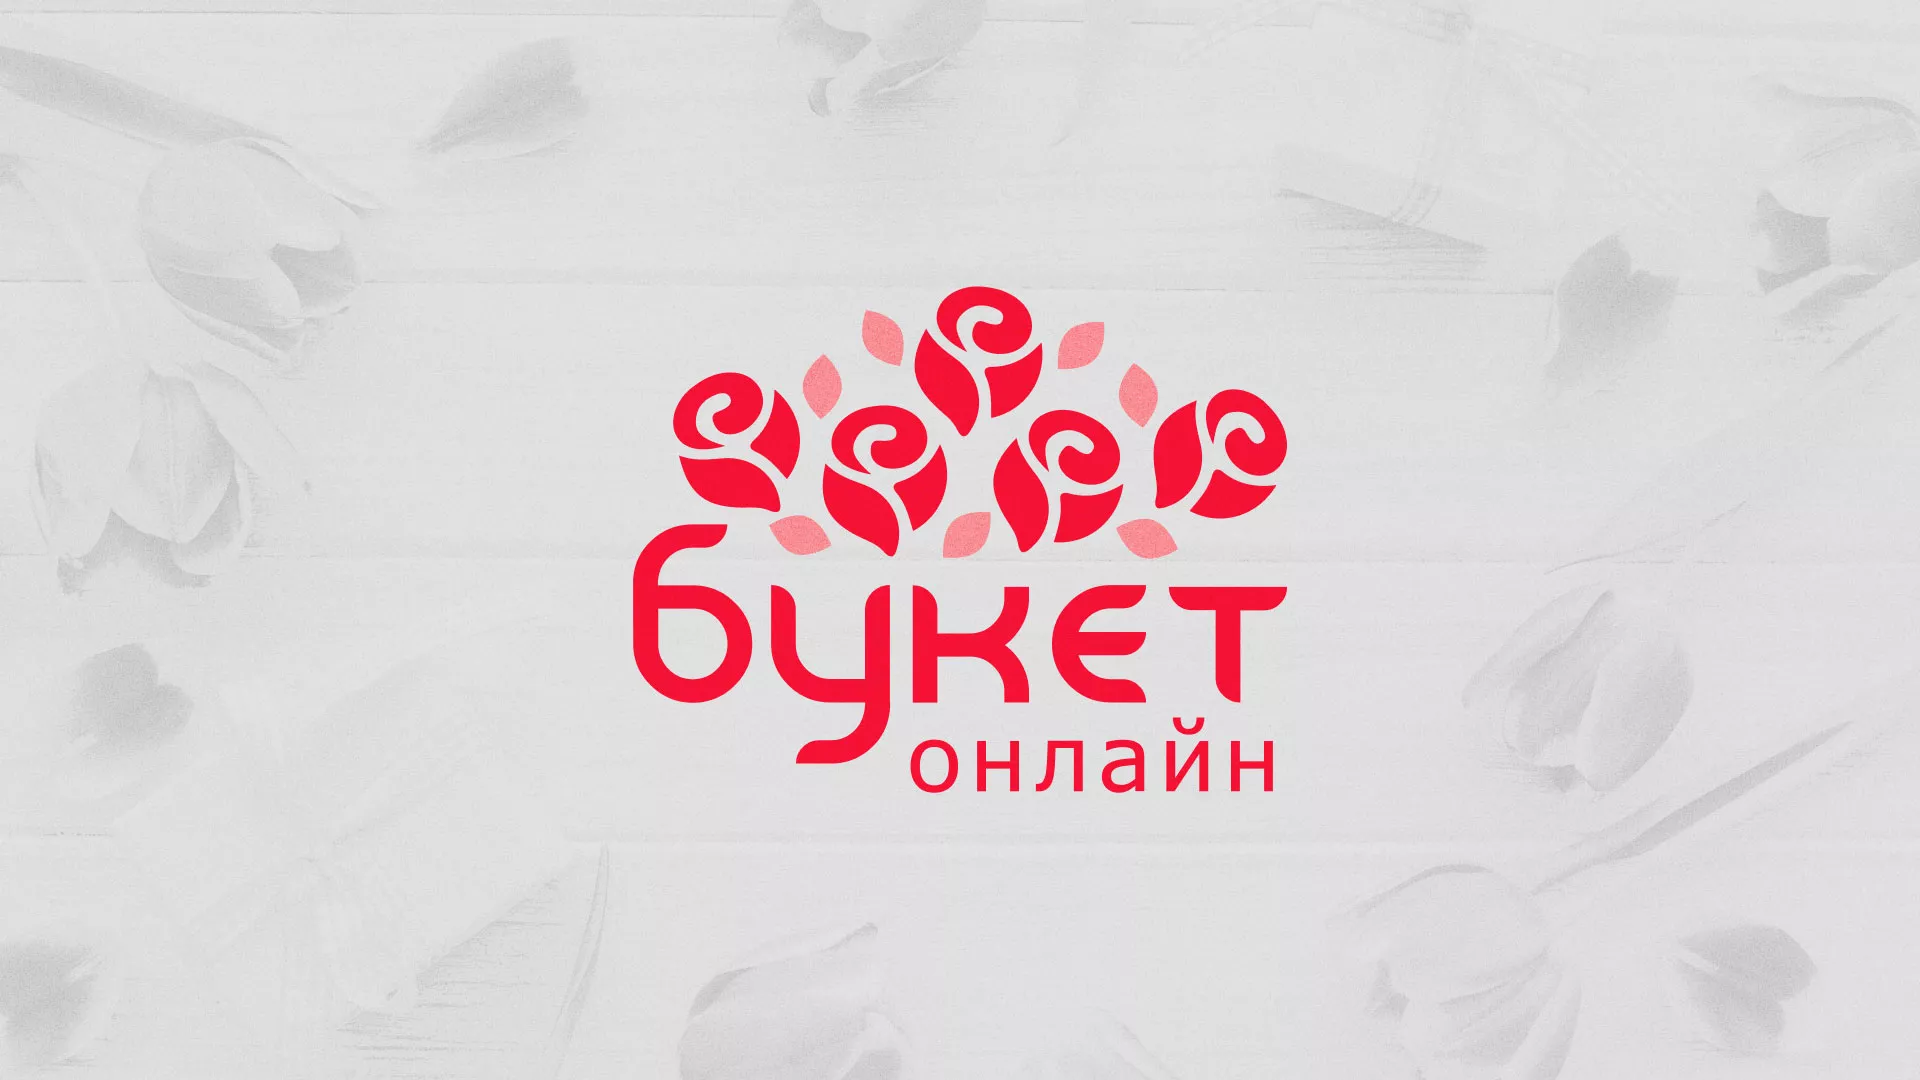 Создание интернет-магазина «Букет-онлайн» по цветам в Обнинске